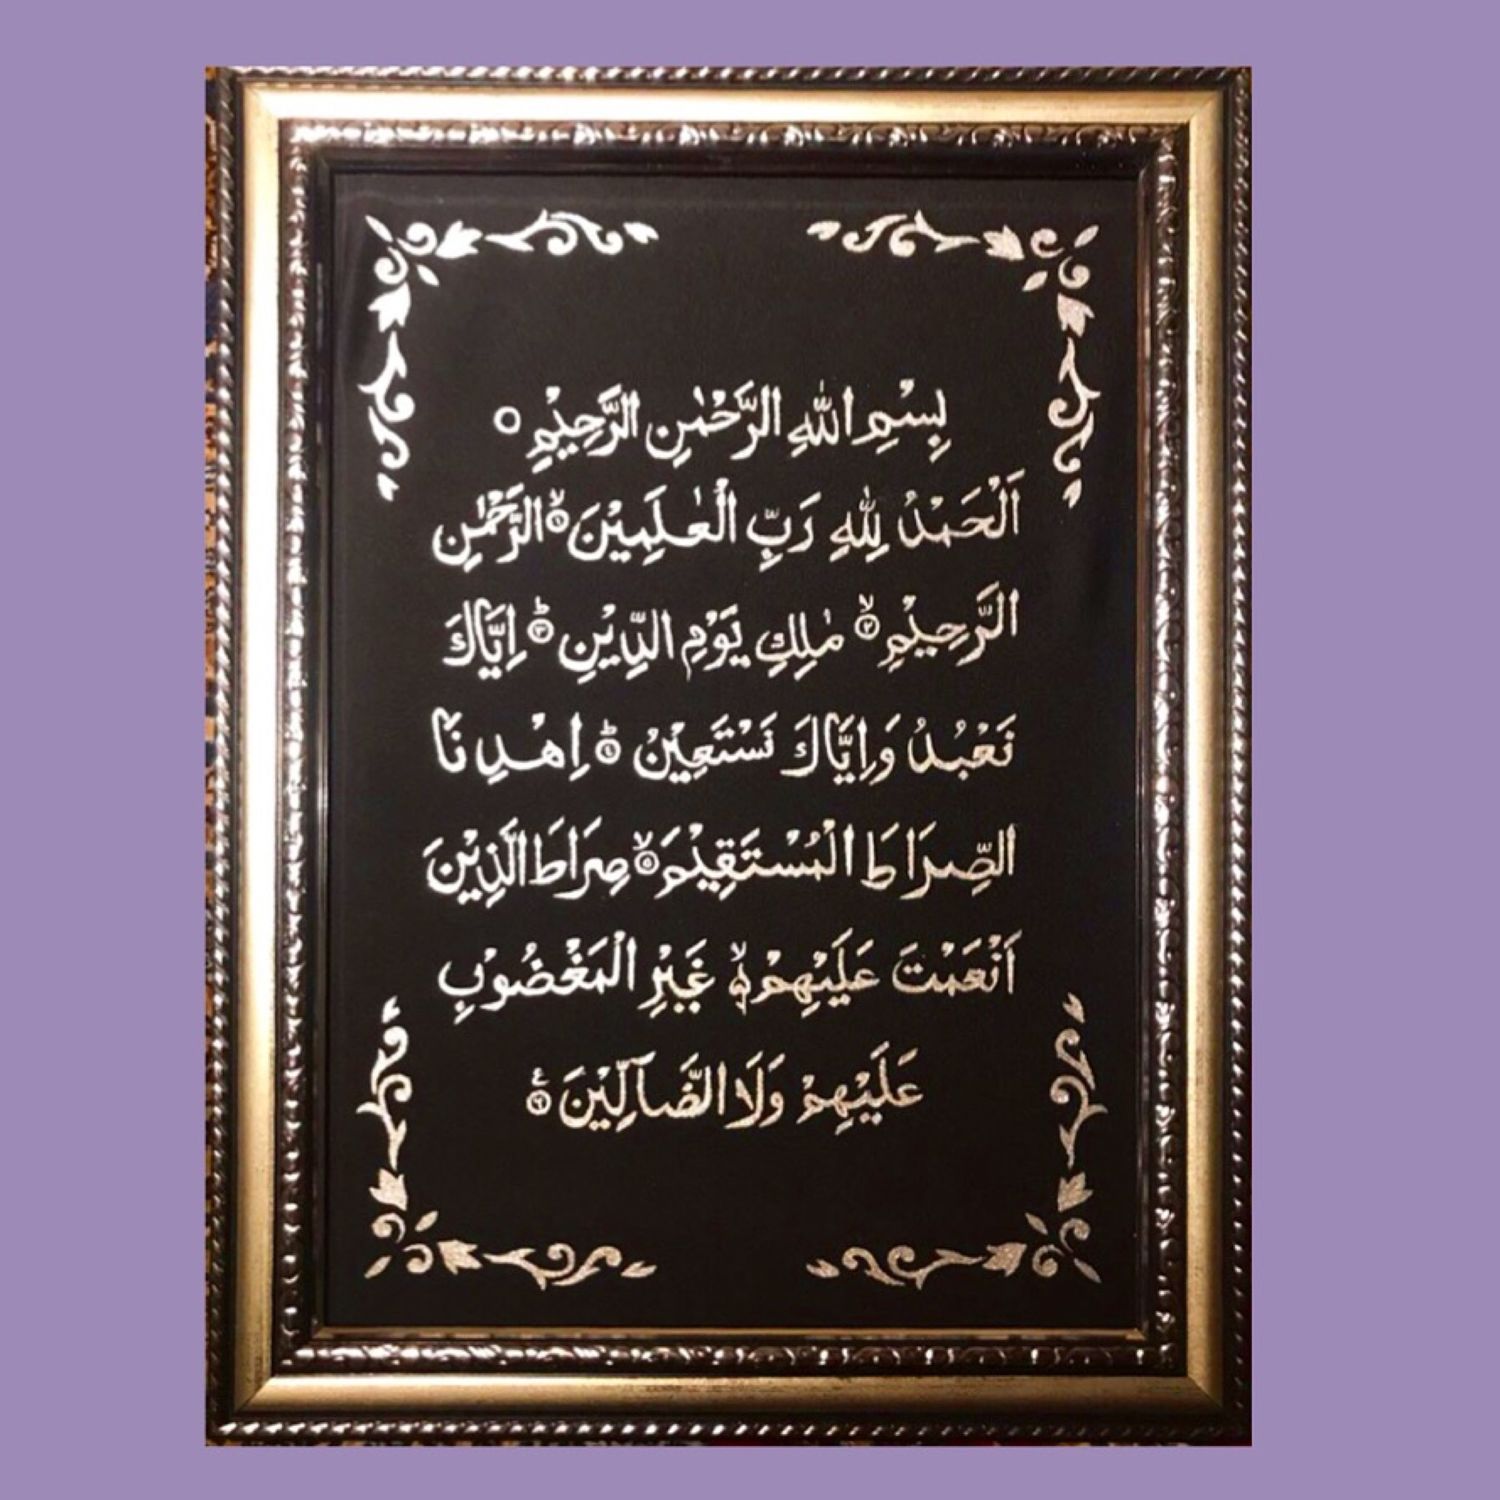 Выучить аль фатиху. Сура Аль Фатиха. Сура Аль Фатиха каллиграфия. Первая Сура Корана. Коран Сура Аль Фатиха на арабском.